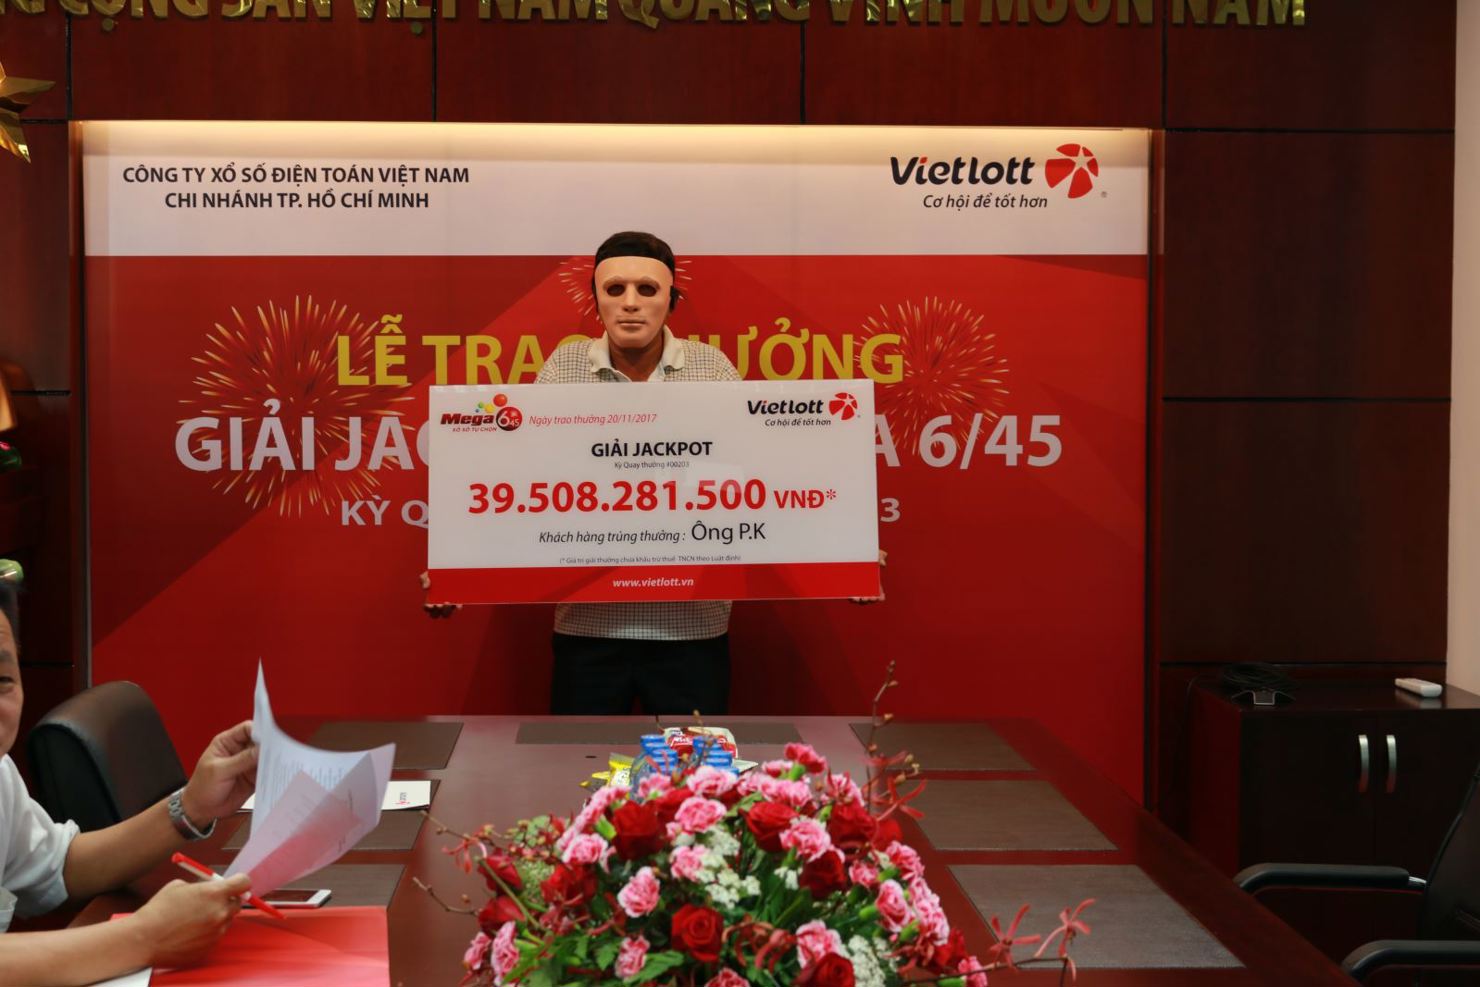 Vietlott trao thưởng cho ông P.K dưới sự chứng kiến của đại diện cơ quan quản lý nhà nước, Deloitte Việt Nam.